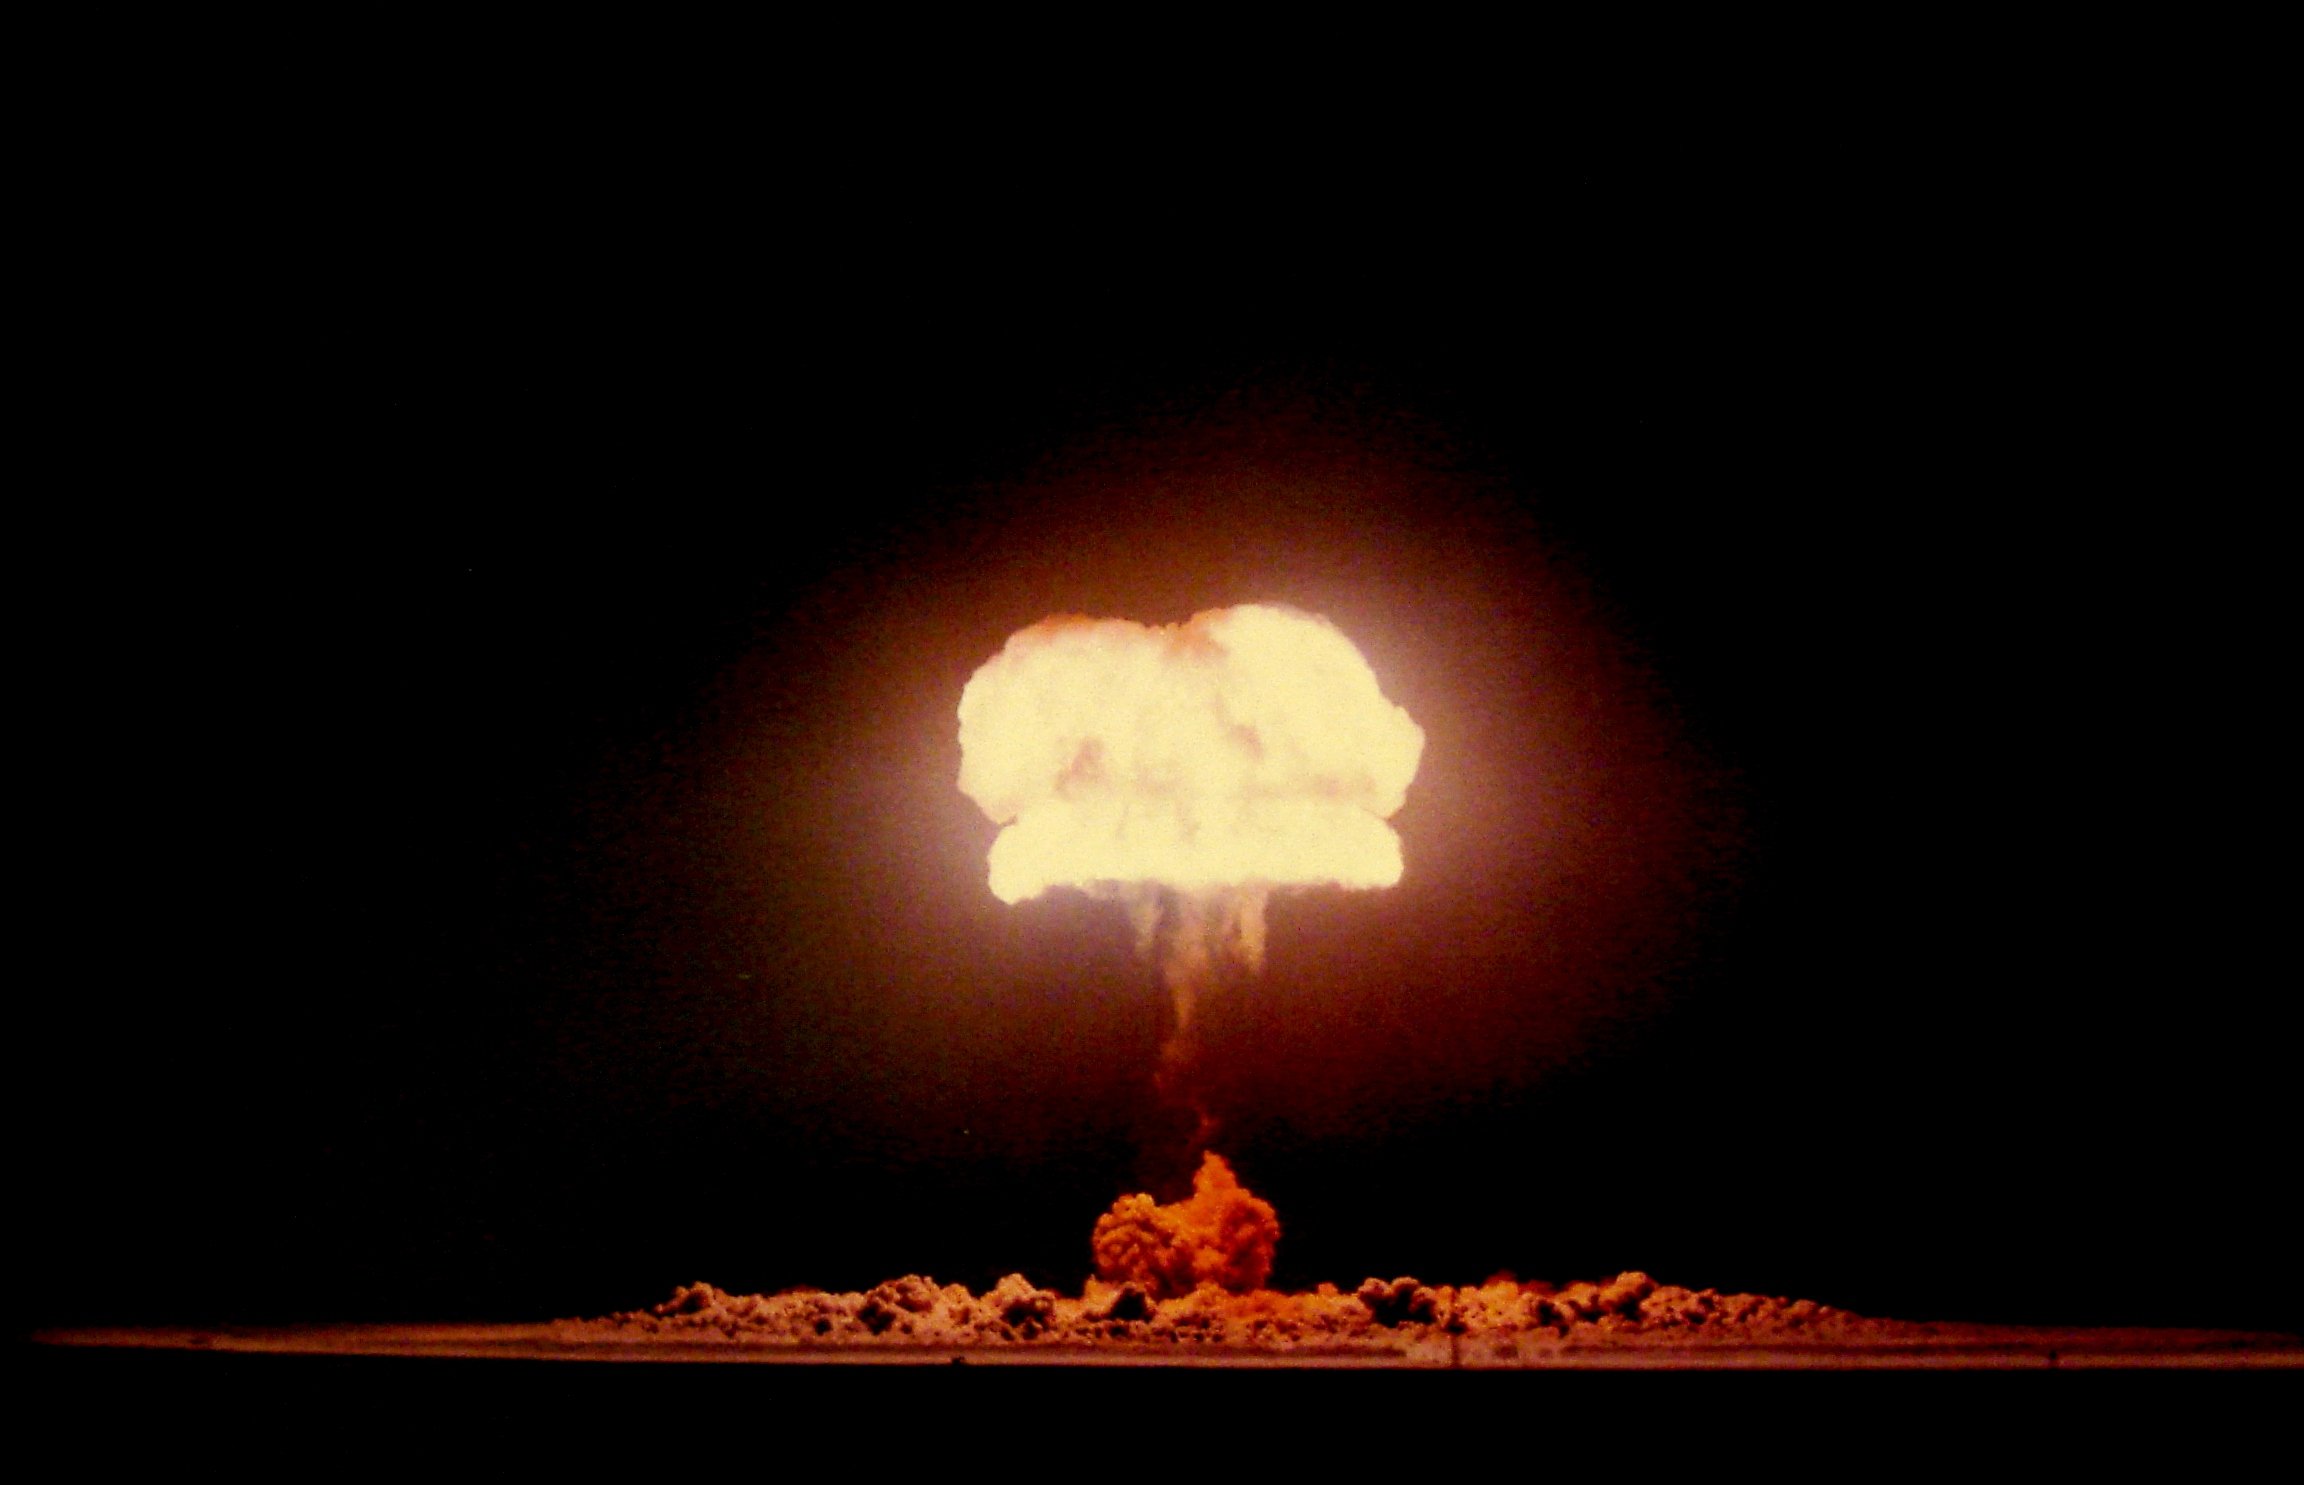 Момент ядерного взрыва. Ядерное оружие световое излучение. Световое излучение ядерного взрыва. Ядерный взрыв 40мт. Высотный взрыв ядерного оружия.